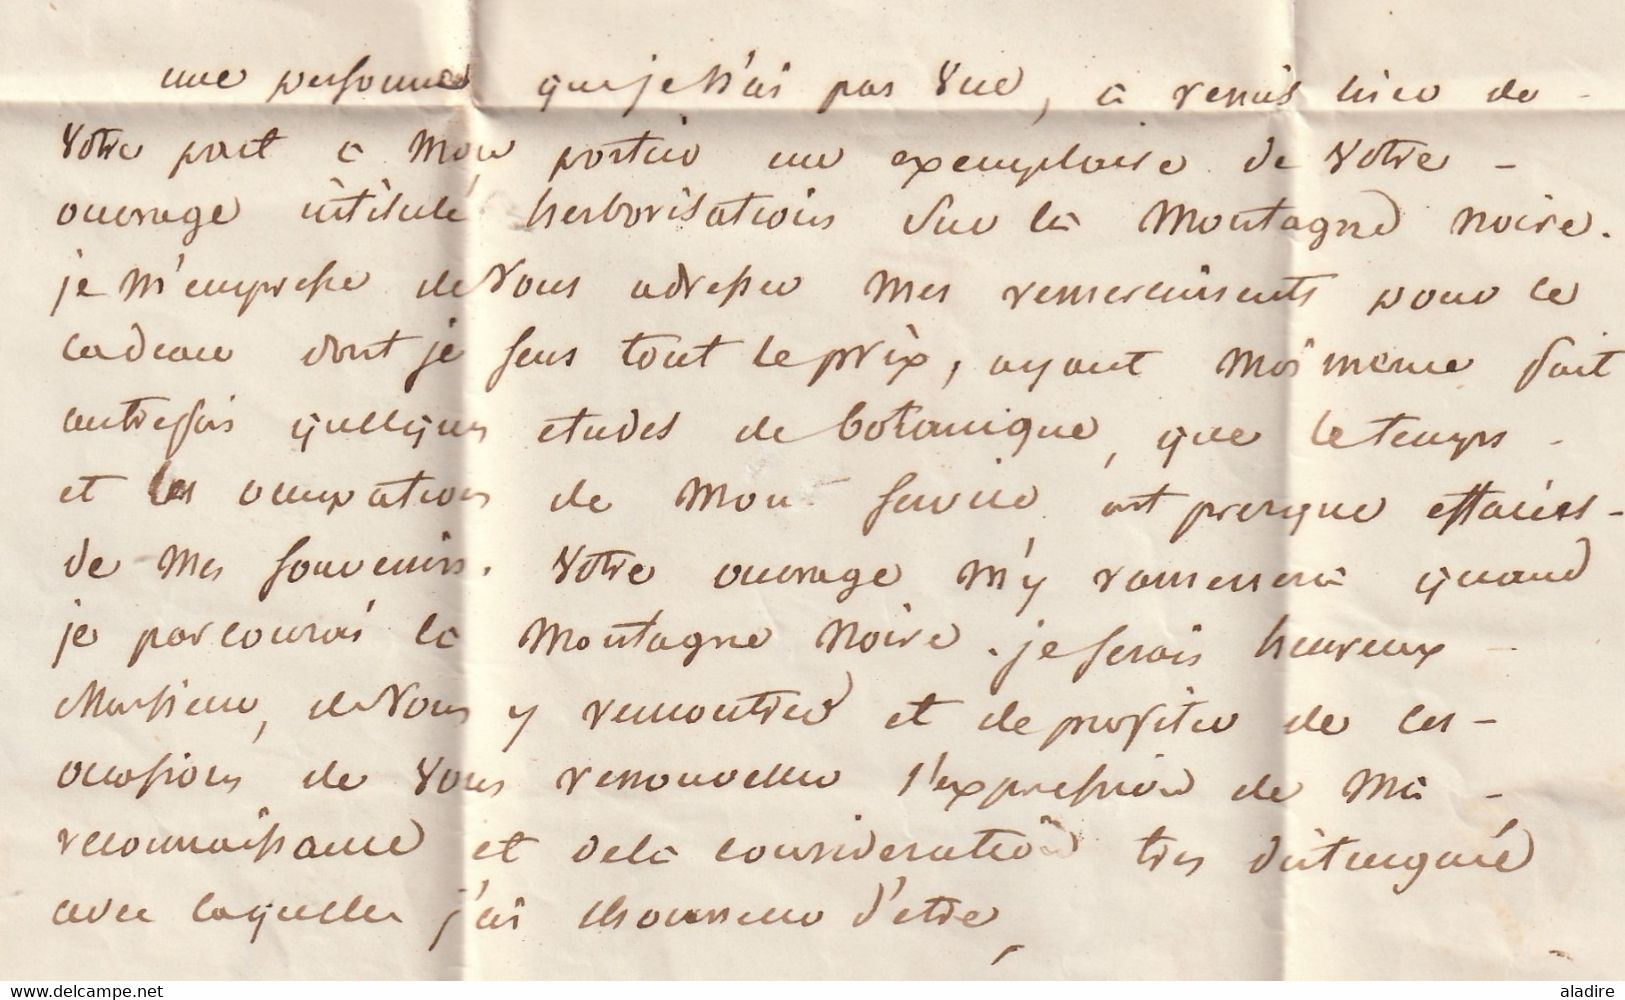 1848 - Lettre pliée avec correspondance savante de Toulouse vers Castres en Port Payé PP - cad arrivée